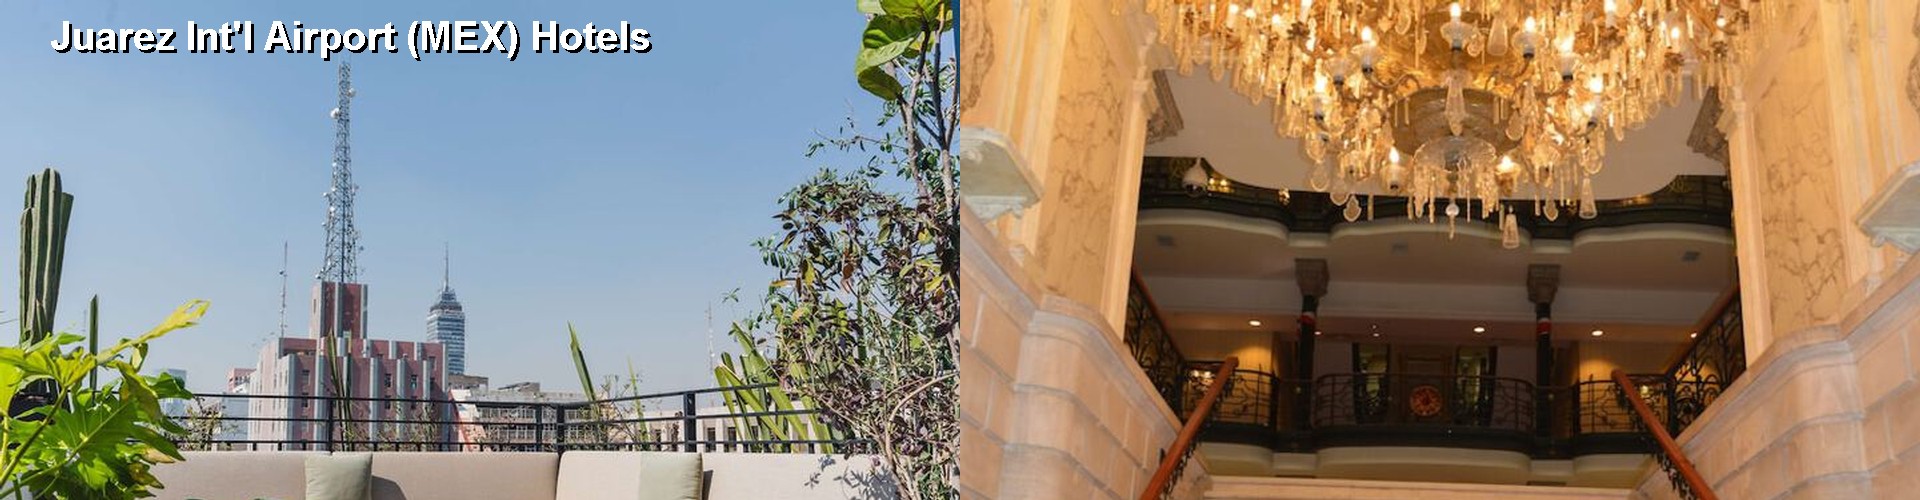 5 Best Hotels near Juarez Int'l Airport (MEX)